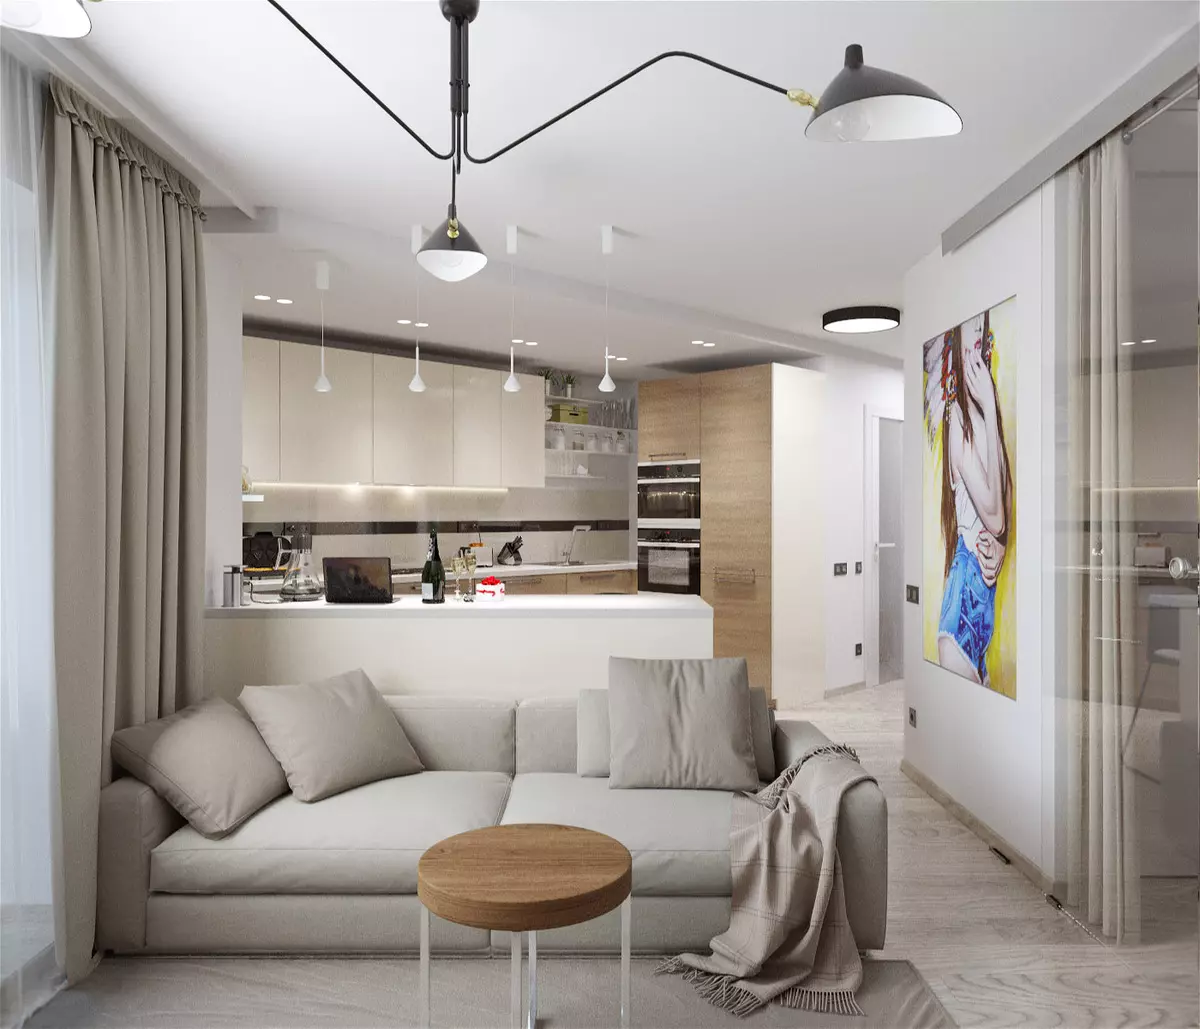 デザインのキッチンリビングルーム18平方メートル。 M（91枚）：計画とキッチン3×6 mのスタジオルームをゾーニングするためのオプション、組み合わせキッチン・リビングルームの興味深いデザイン 9531_30